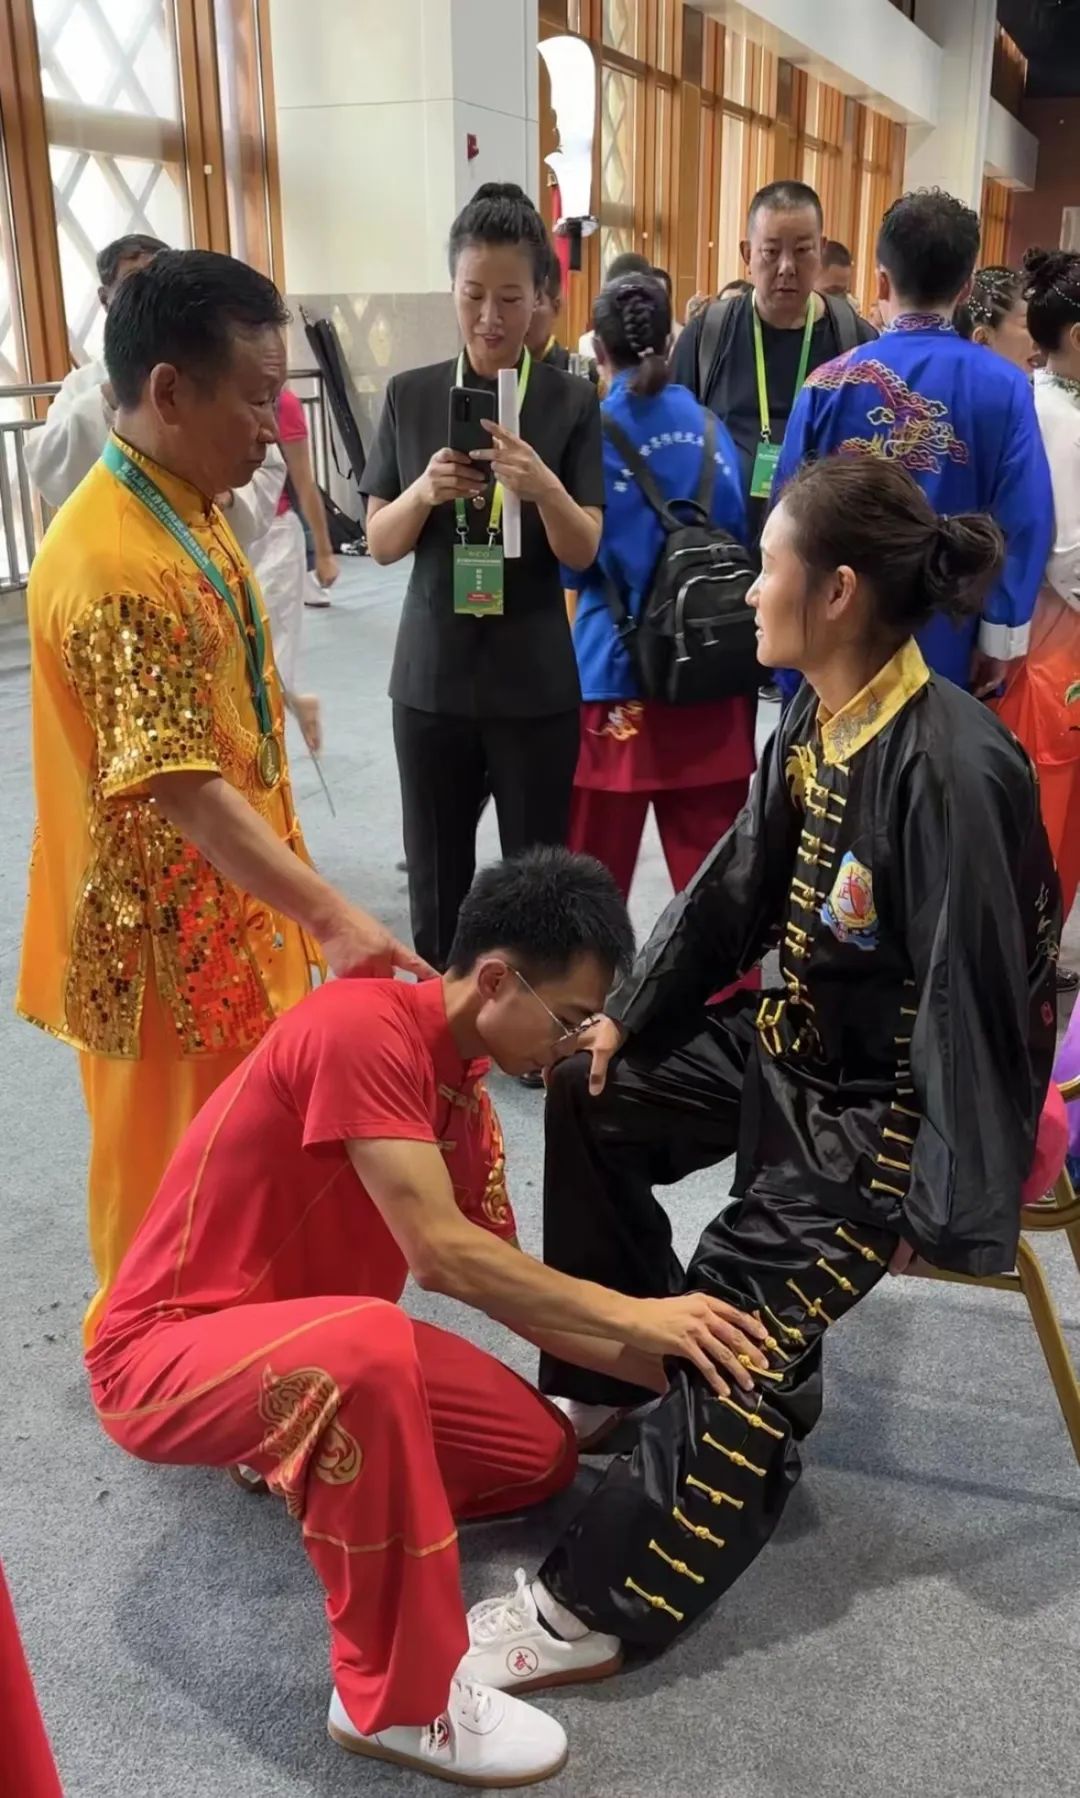 战绩辉煌！中黄武医教练勇夺第九届世界传统武术锦标赛金牌！